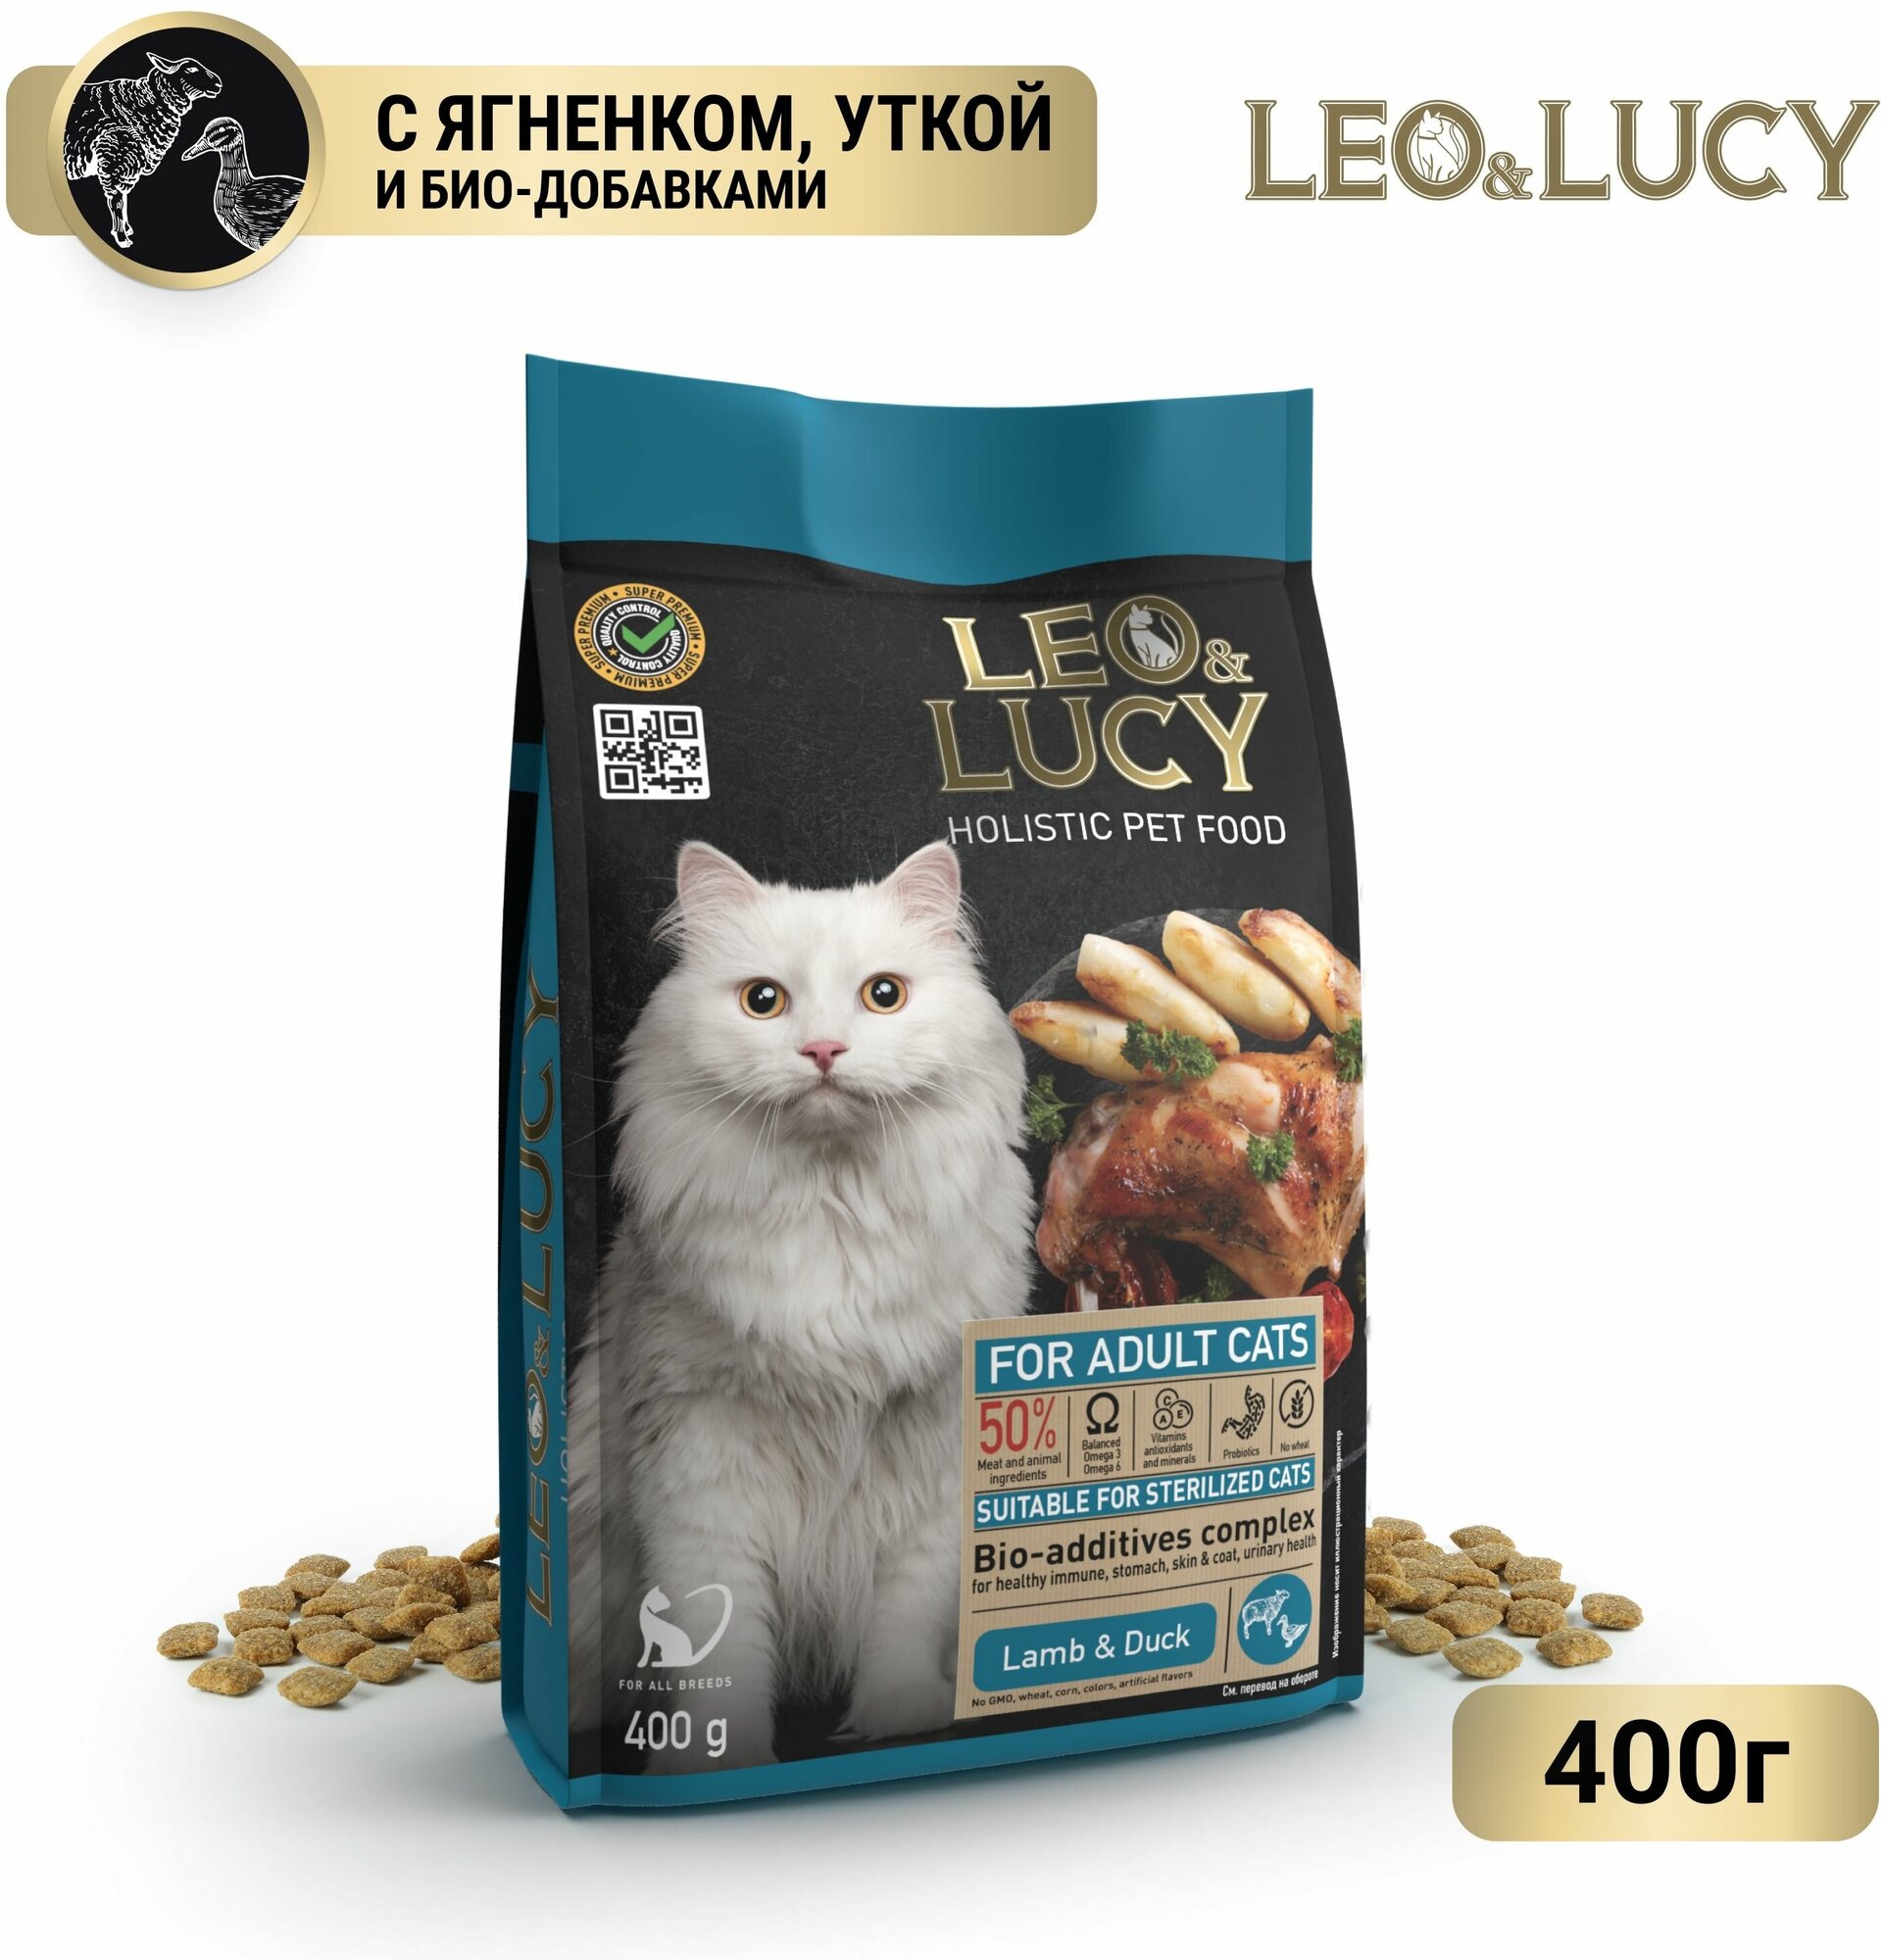 LEO&LUCY cухой холистик корм полнорационный для взрослых кошек с ягненком, уткой и биодобавками, подходит для стерилизованных, 400 г.